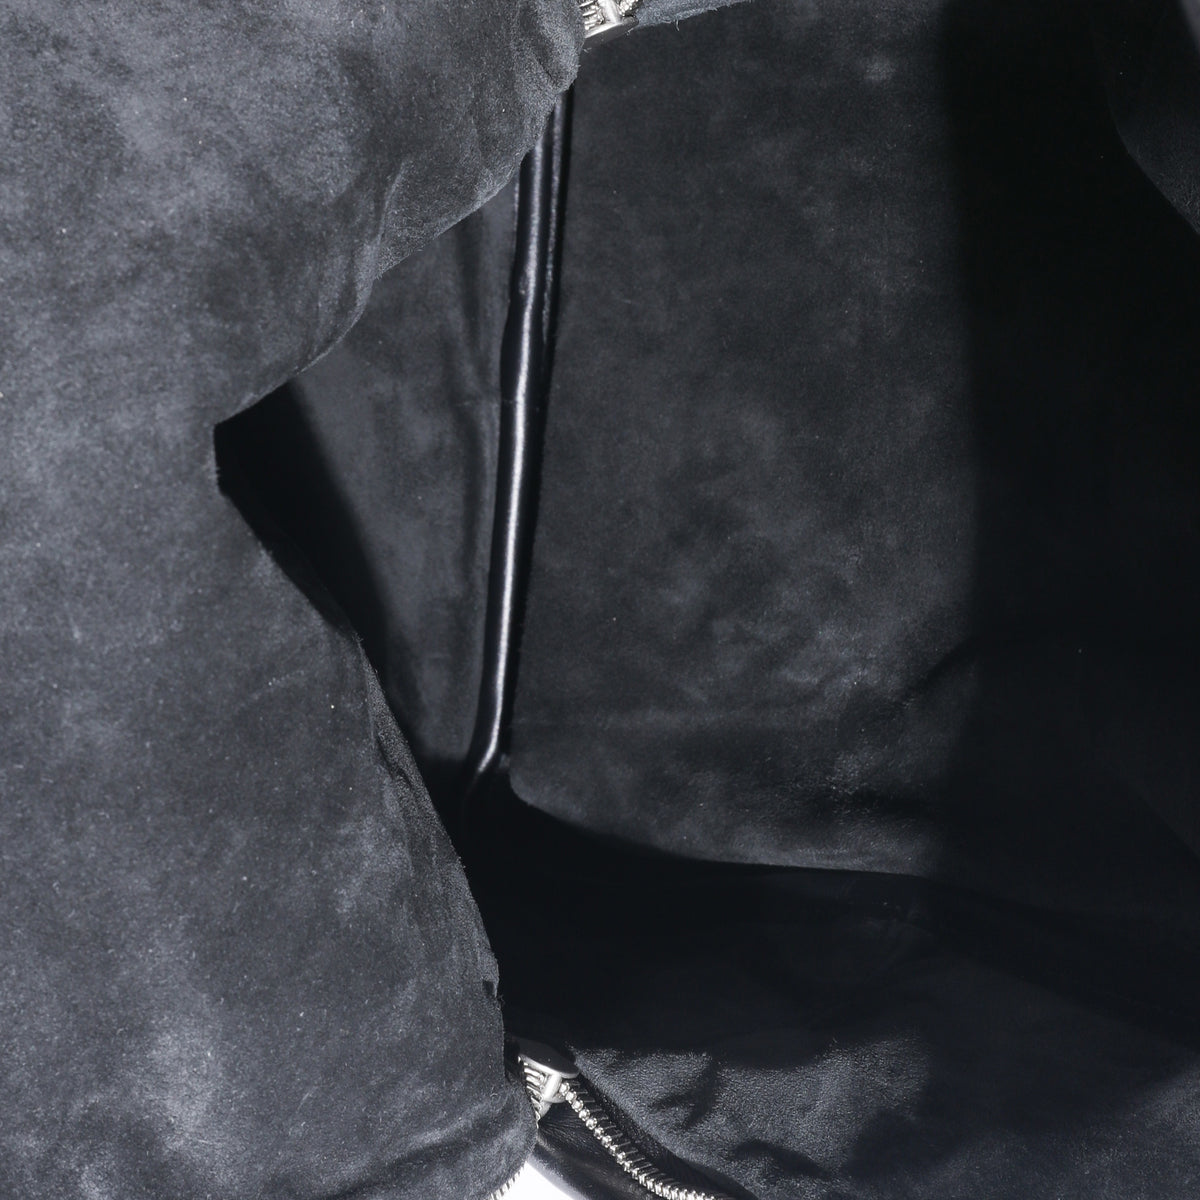 Black Calfskin Small Intrecciato Backpack